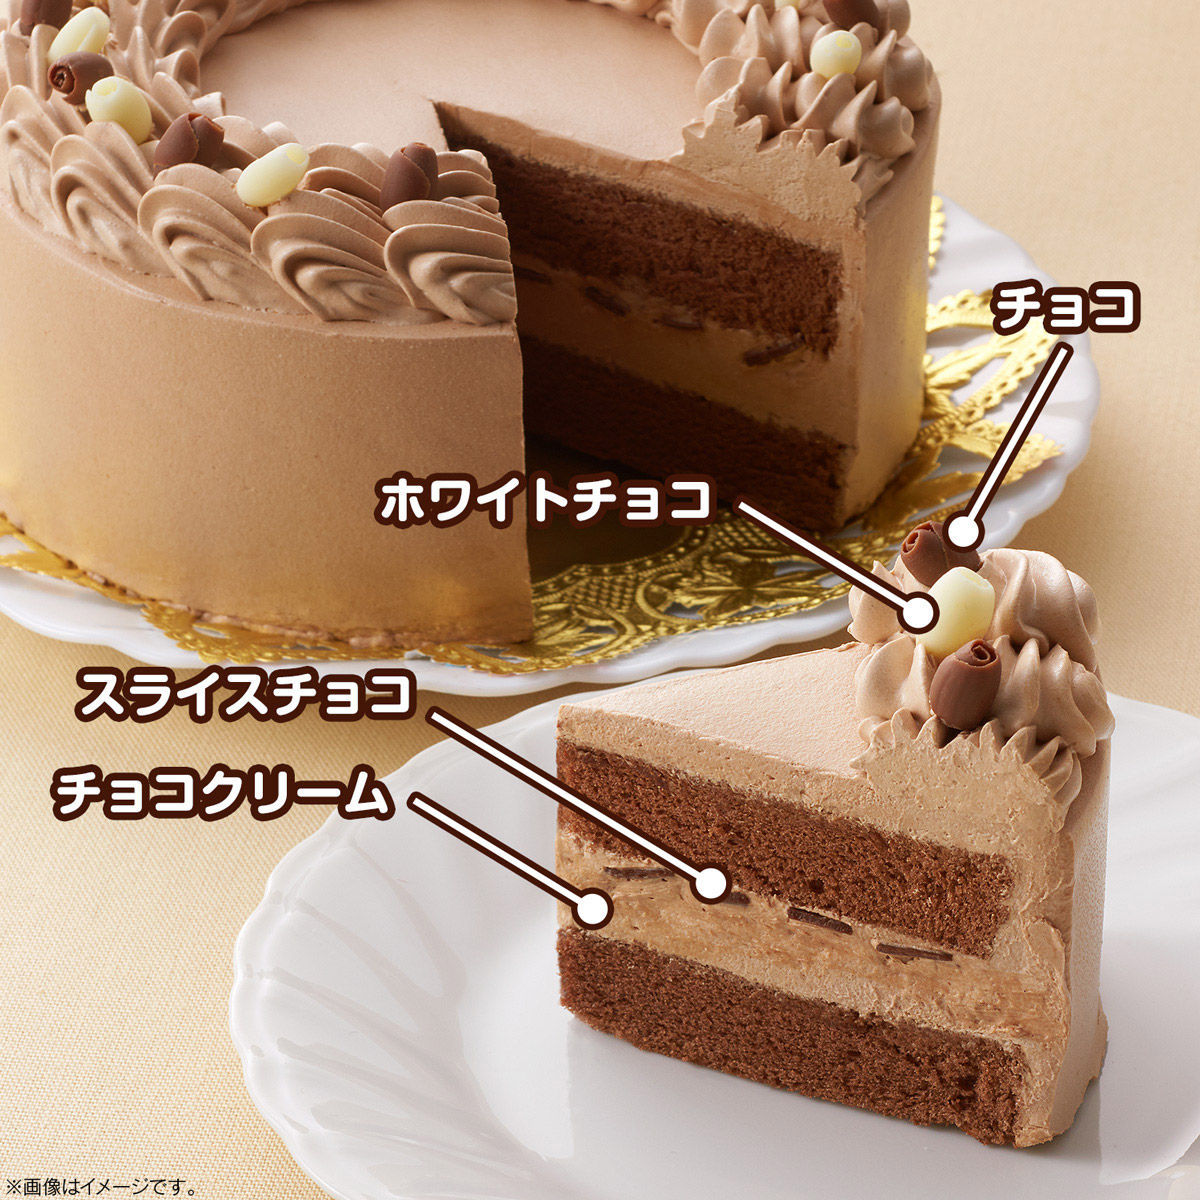 キャラデコお祝いケーキ 仮面ライダーセイバー チョコクリーム 5号サイズ 発送日 年9月 バンダイ キャンディ公式サイト